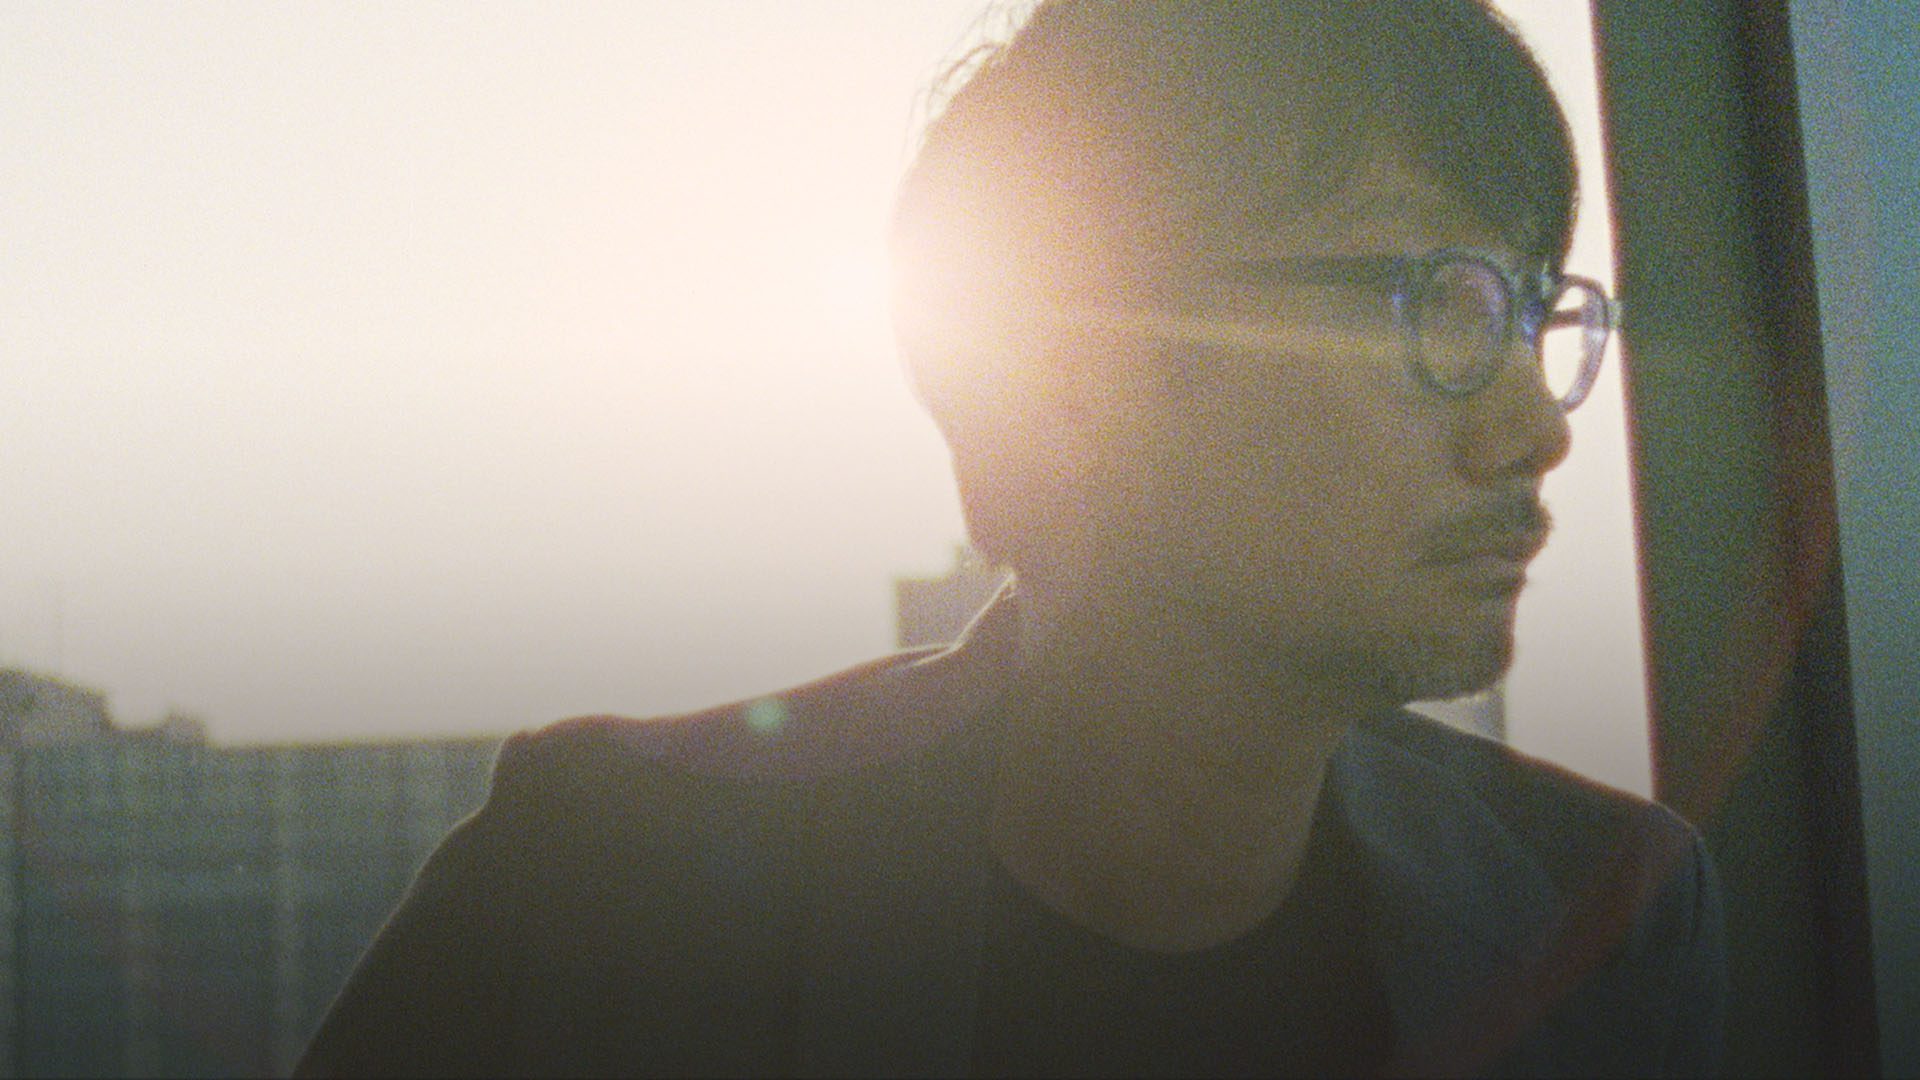 Hideo Kojima: Connecting Worlds, in arrivo il documentario sul celebre game designer